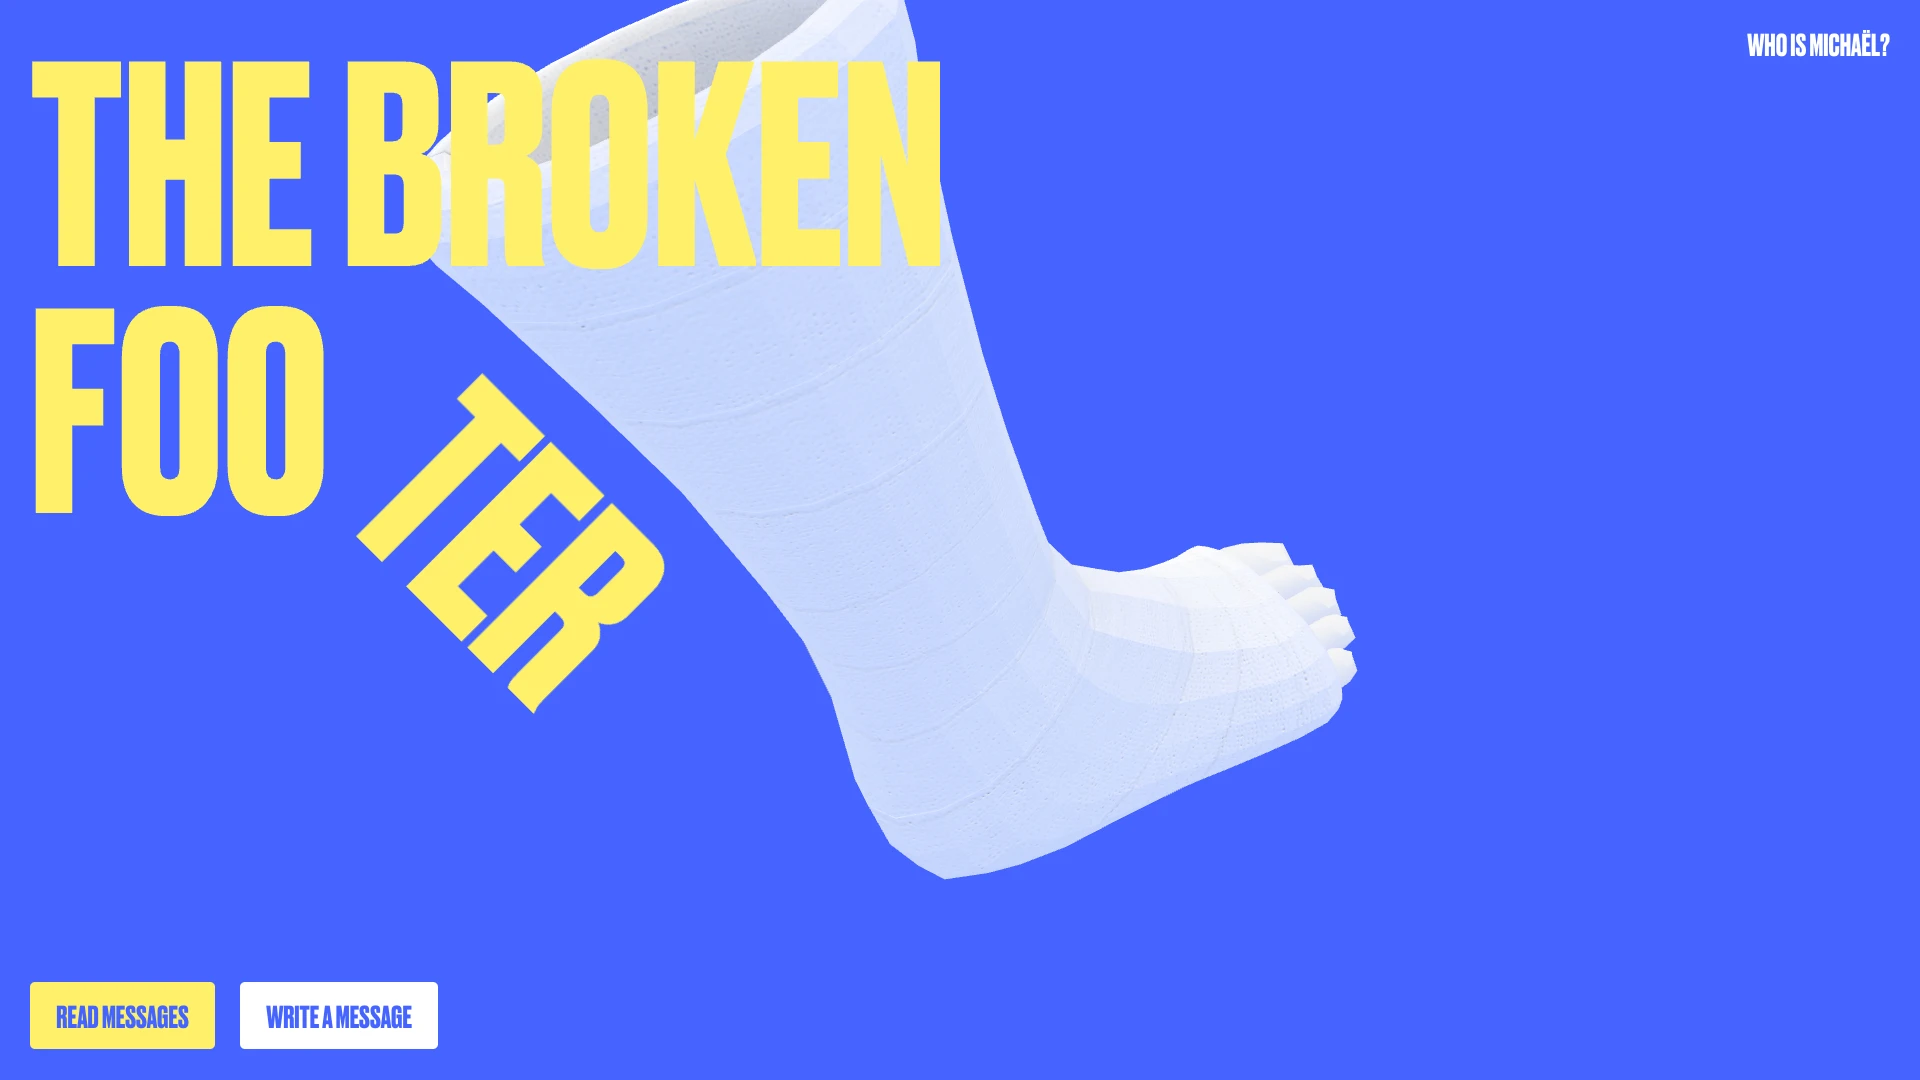 The Broken Footer